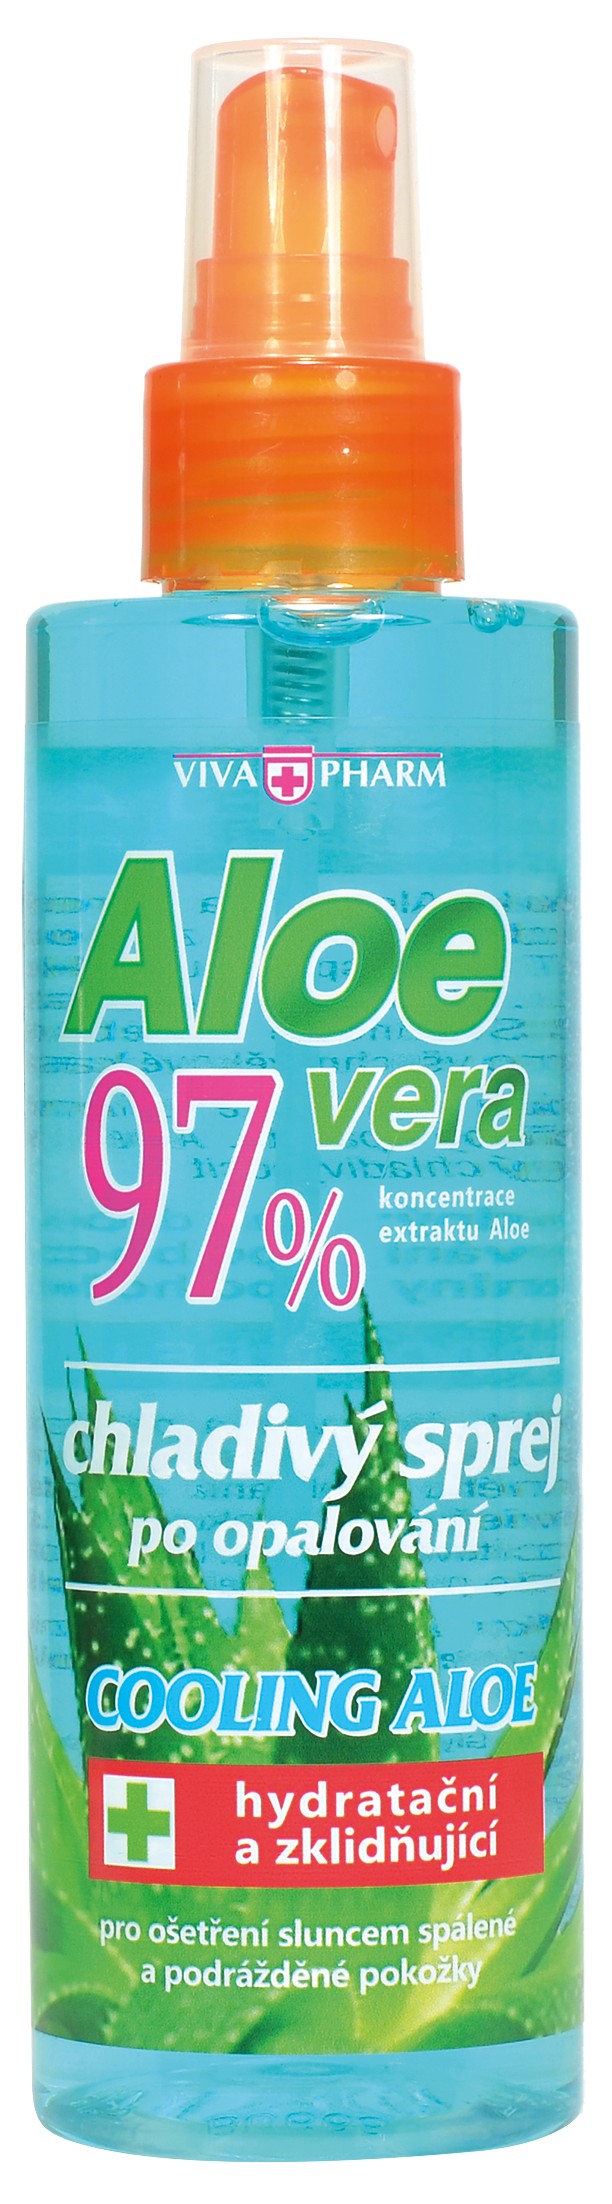 Vivaco Aloe Vera 97% chladivý sprej po opalování 200 ml